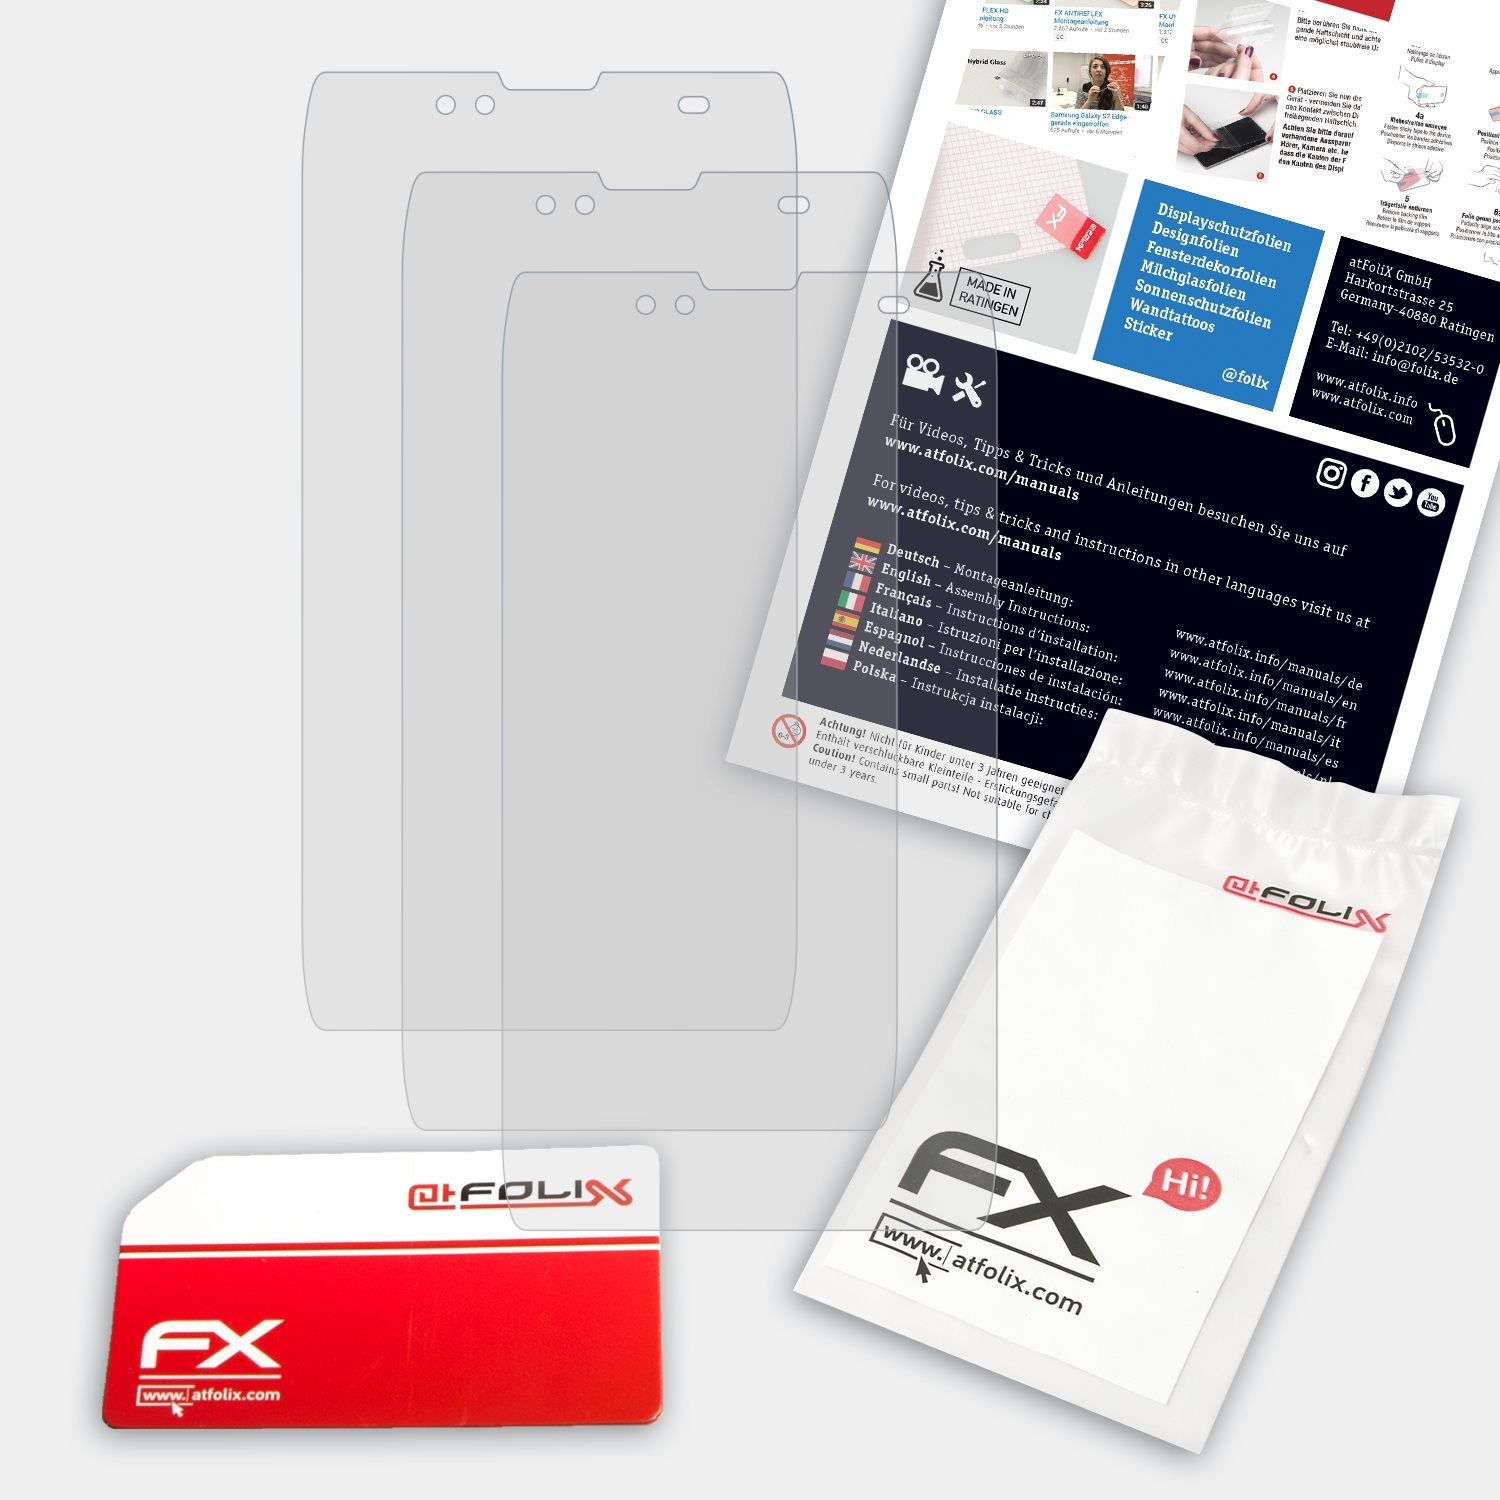 ATFOLIX 3x FX-Antireflex Displayschutz(für Uhans U300)